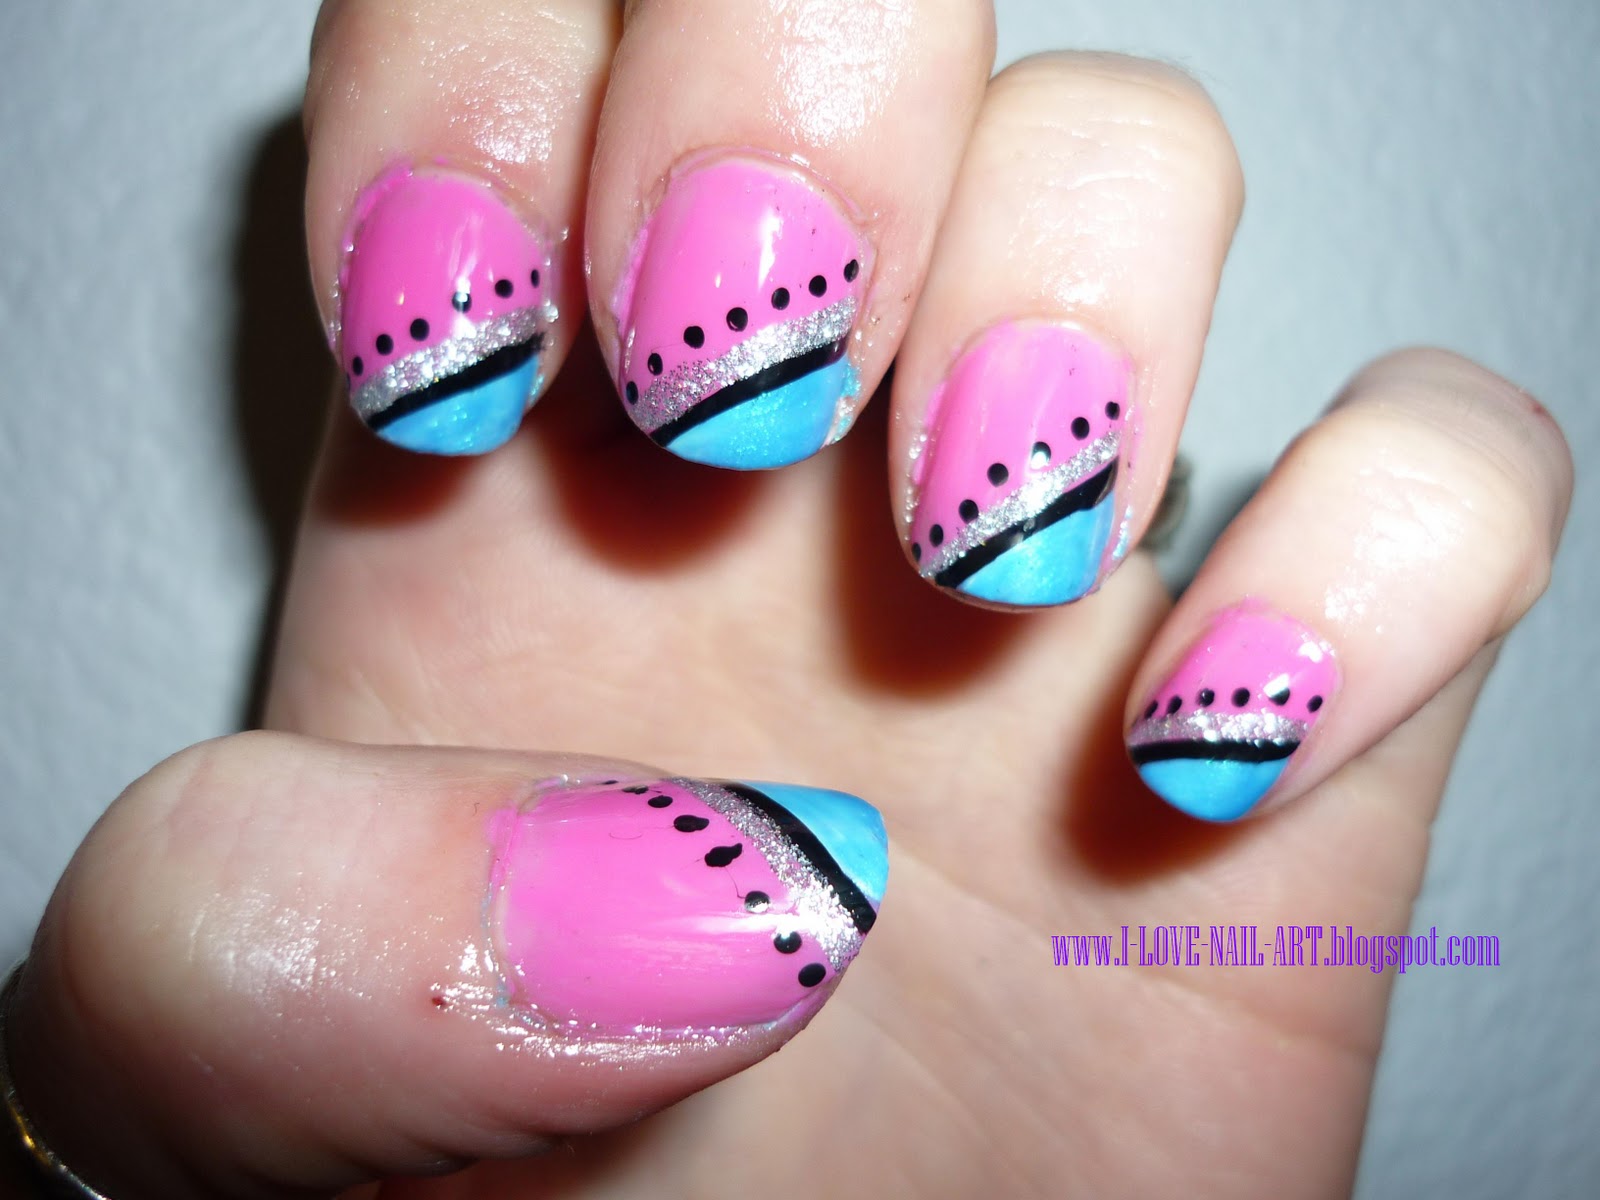 ... nails nail polish design for short nails imagesforfree org nail art